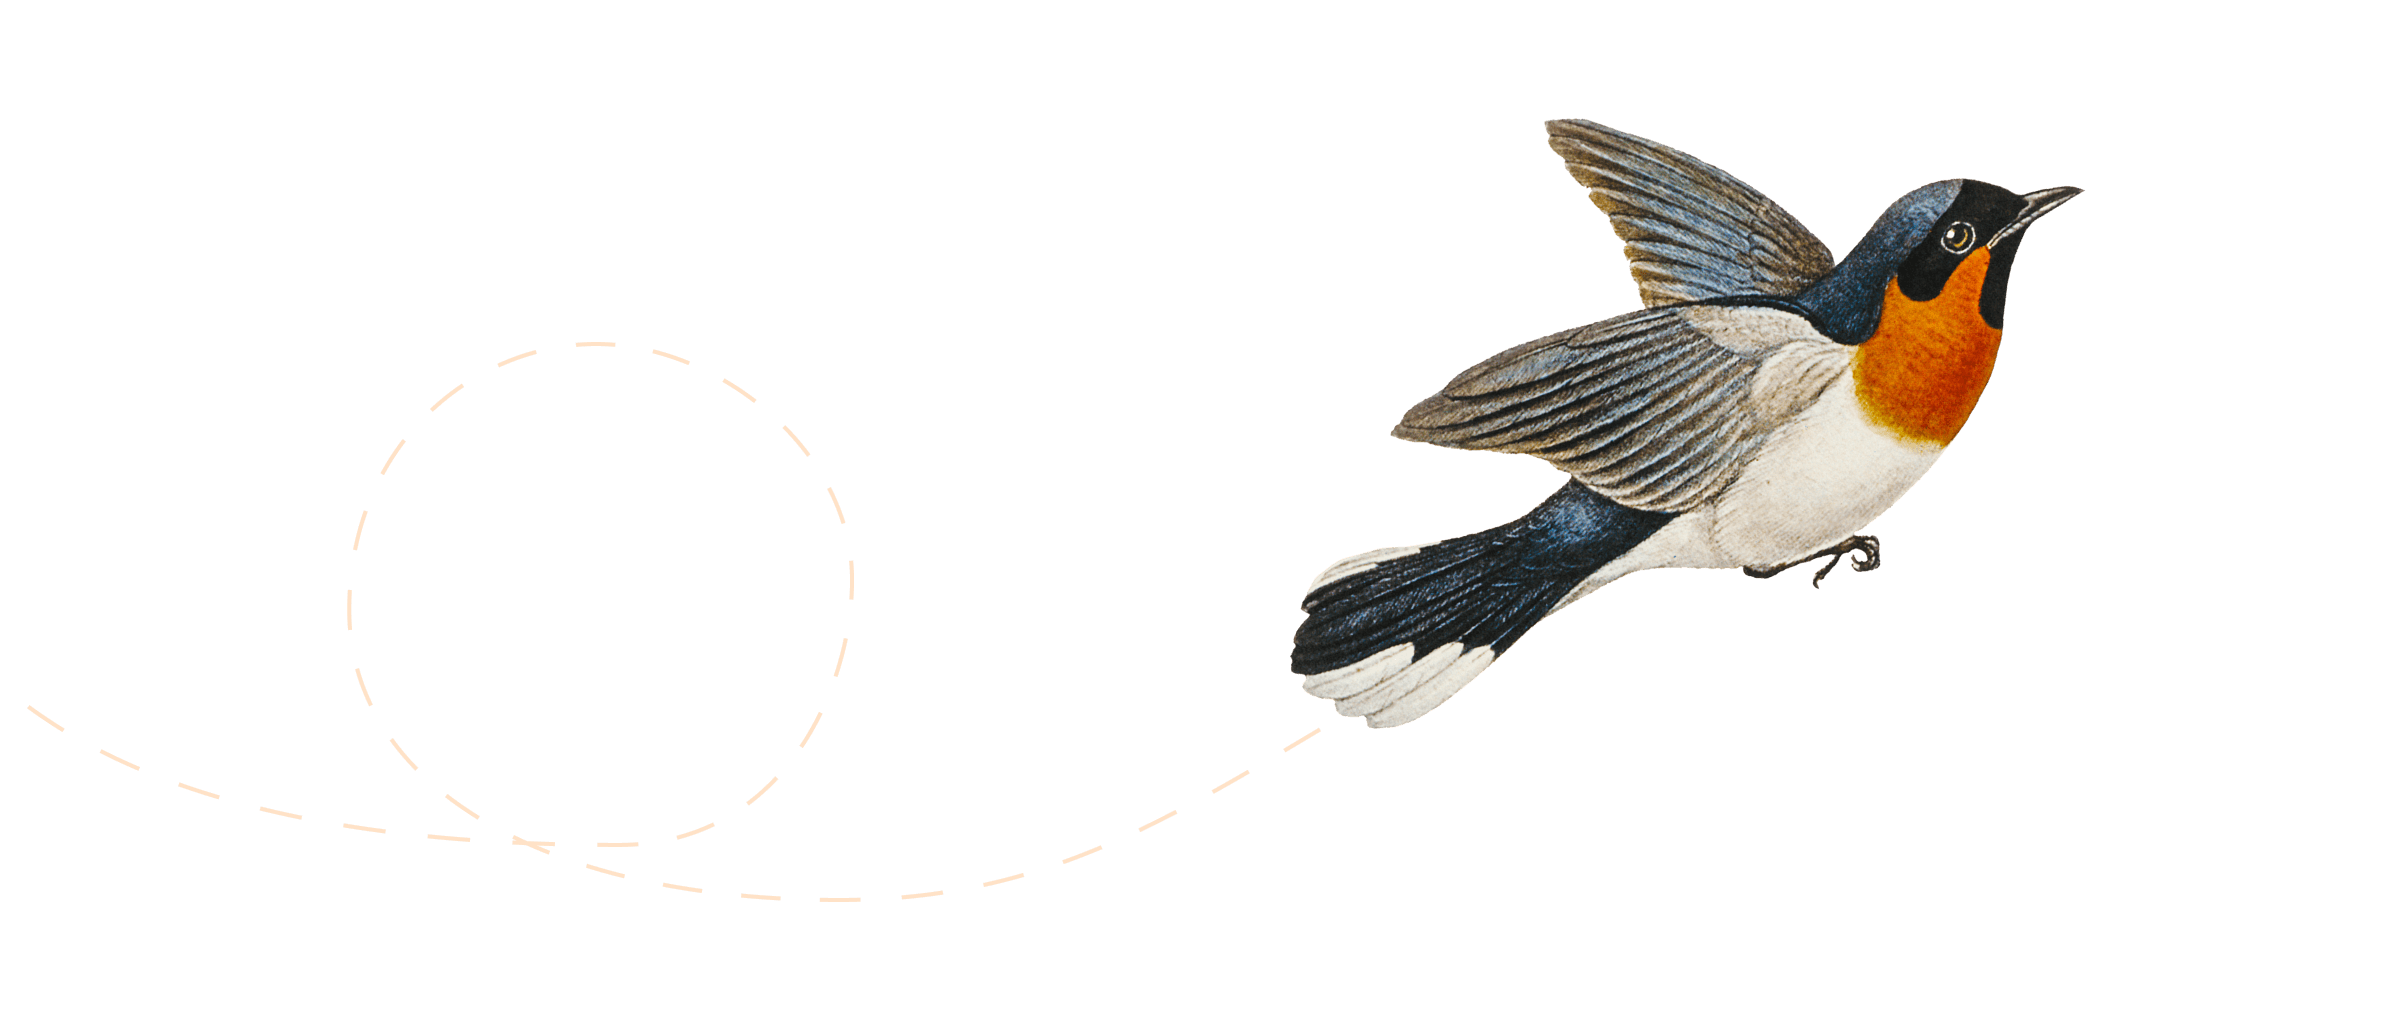 Illustration eines fliegenden Vogels.